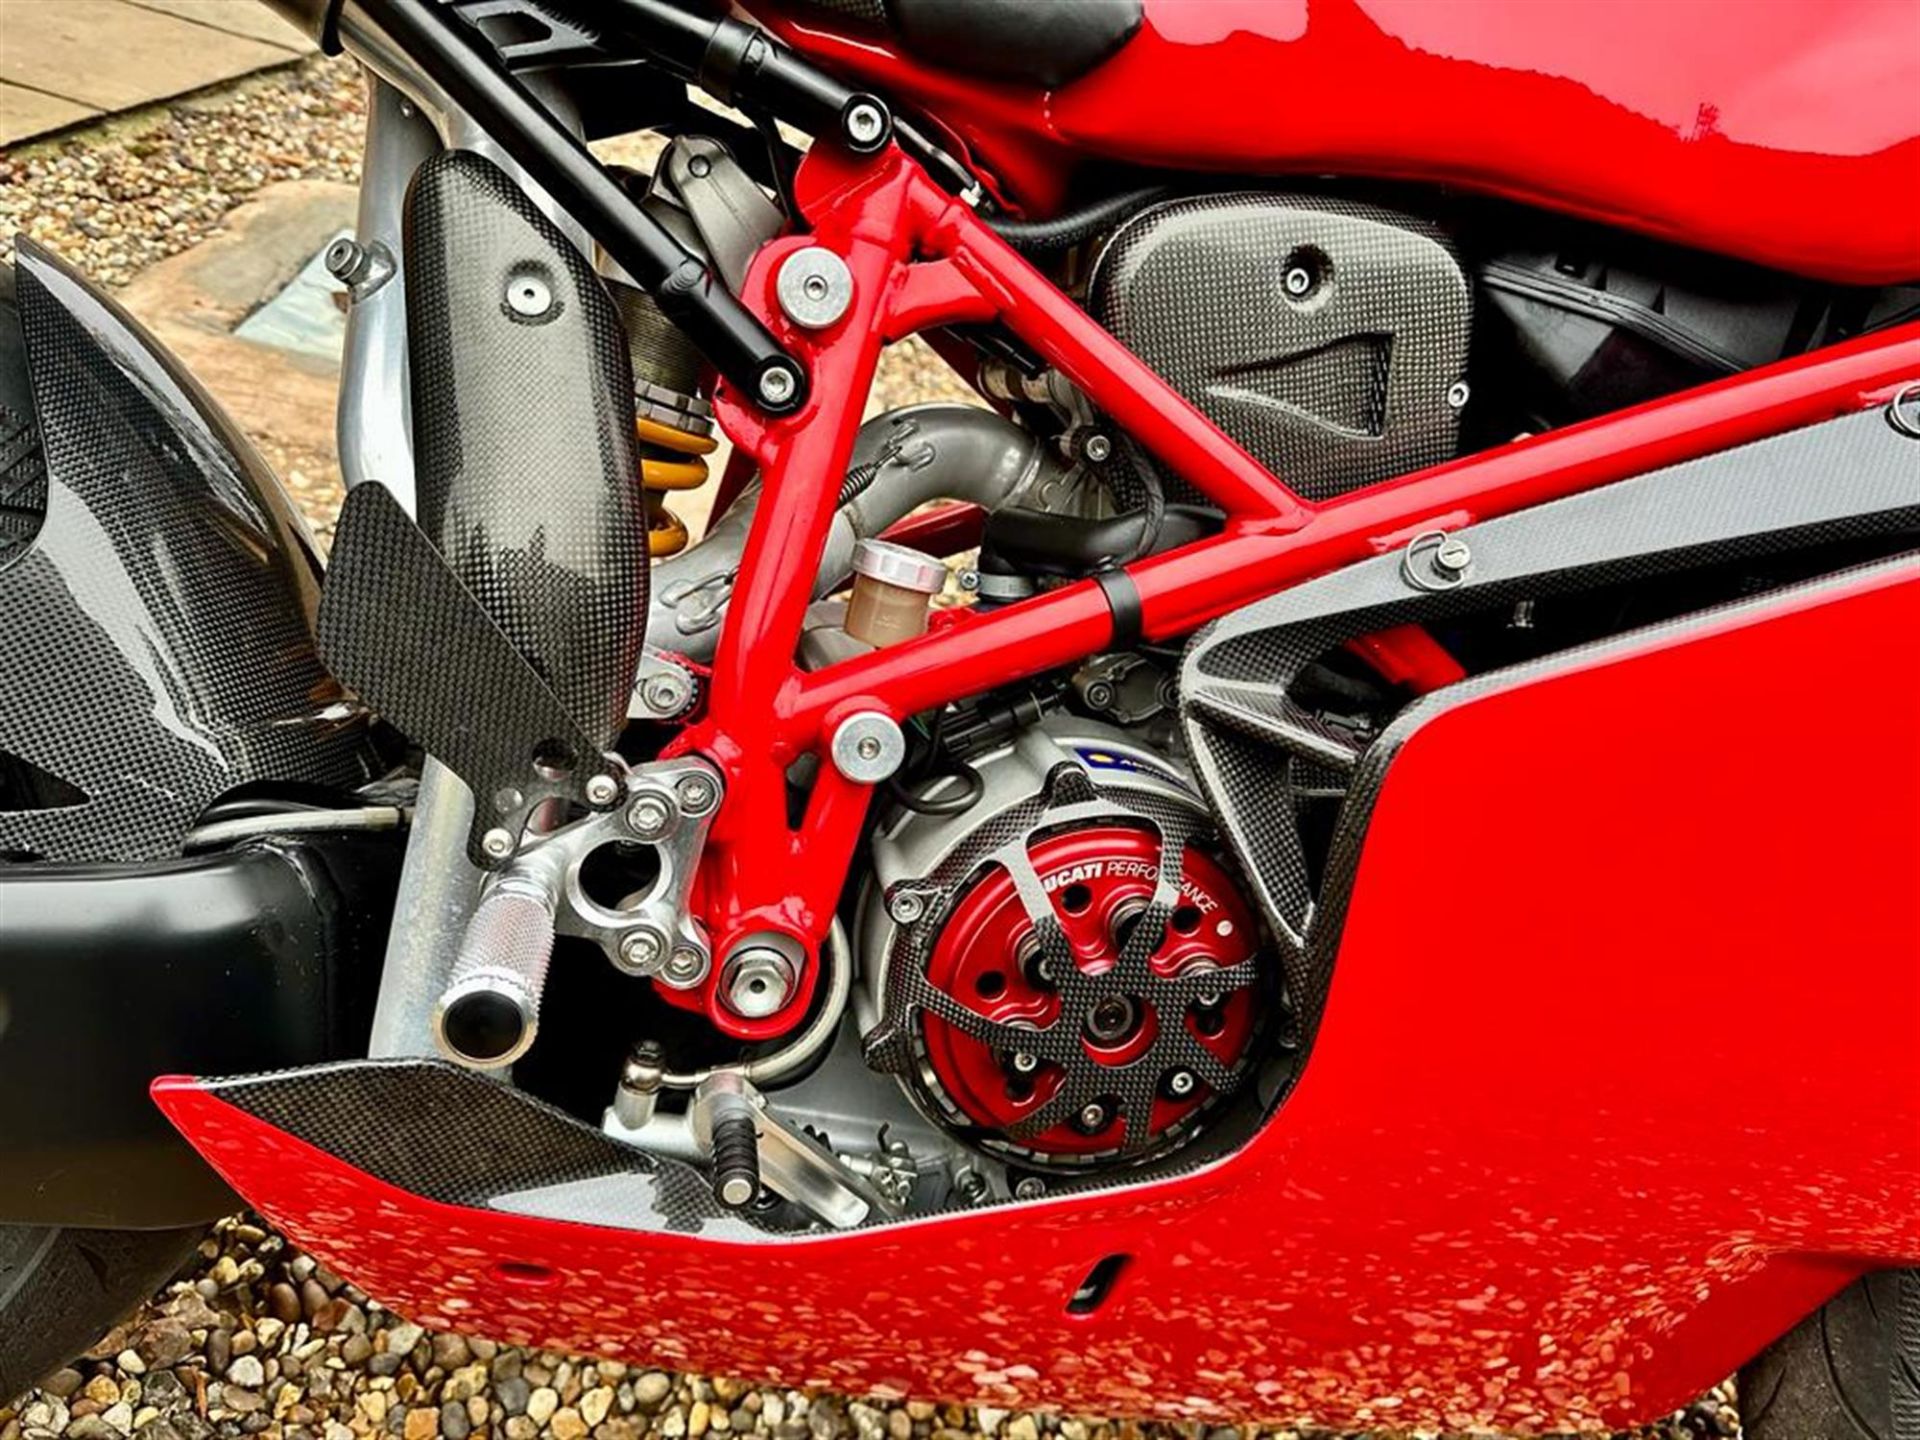 2004 Ducati 749R 749cc - Image 10 of 10